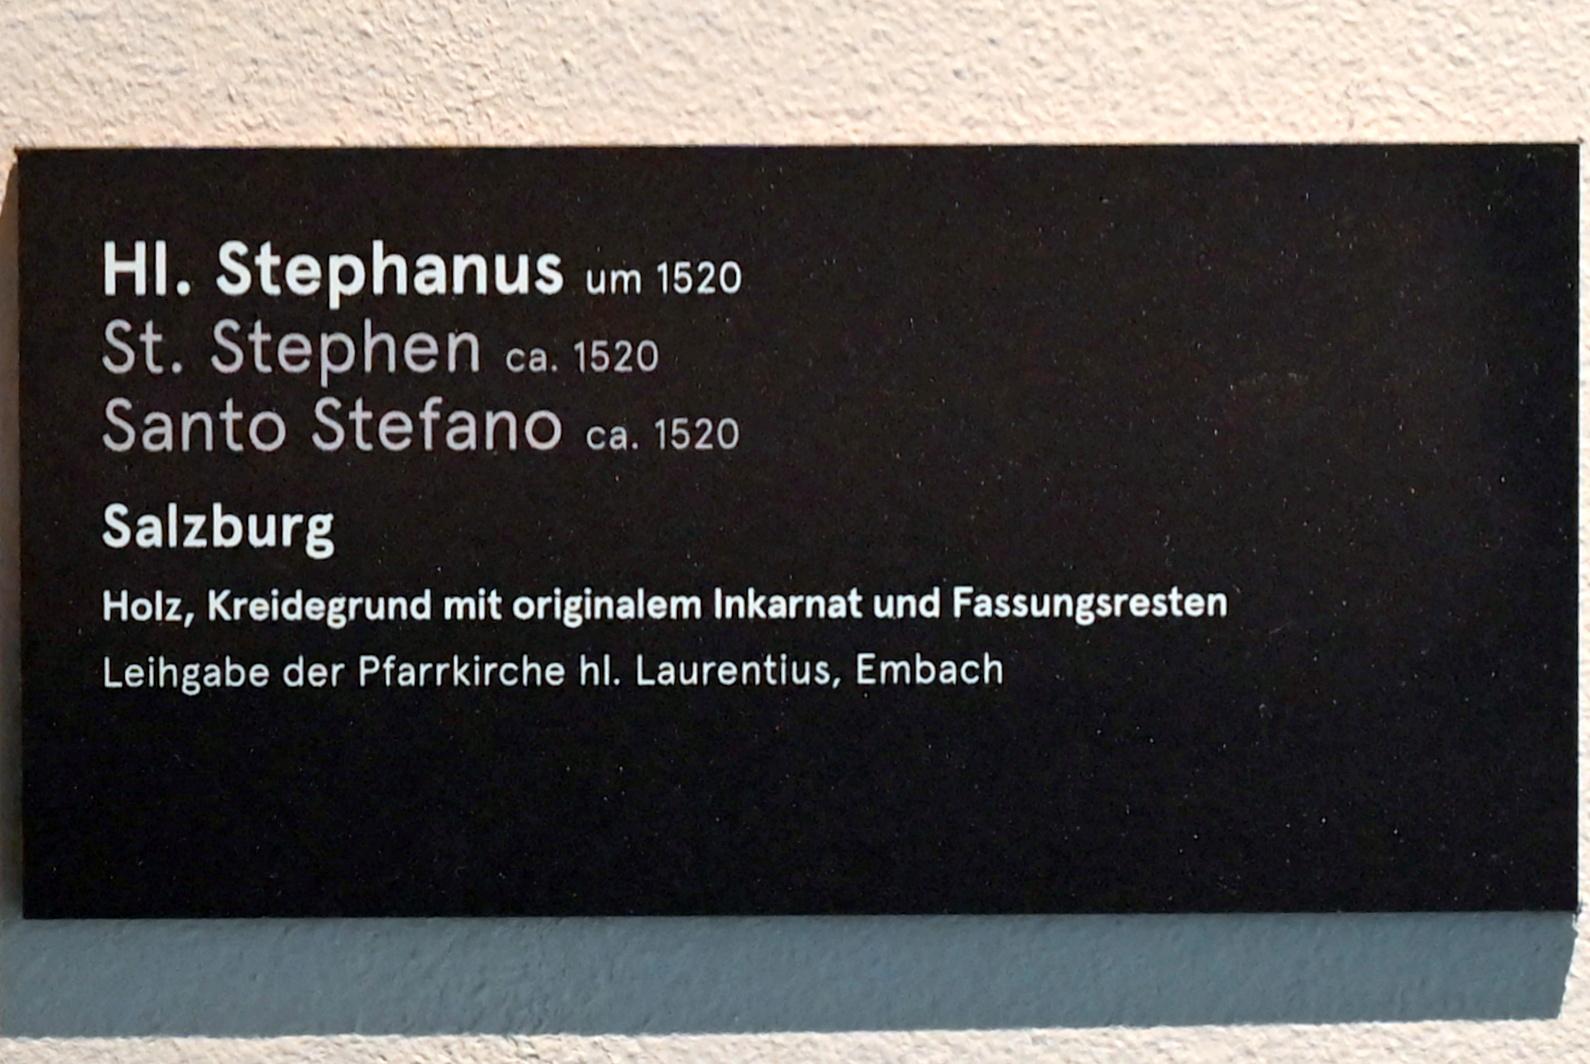 Hl. Stephanus, Embach, Pfarrkirche St. Laurentius, jetzt Salzburg, Dommuseum Salzburg, um 1520, Bild 3/3